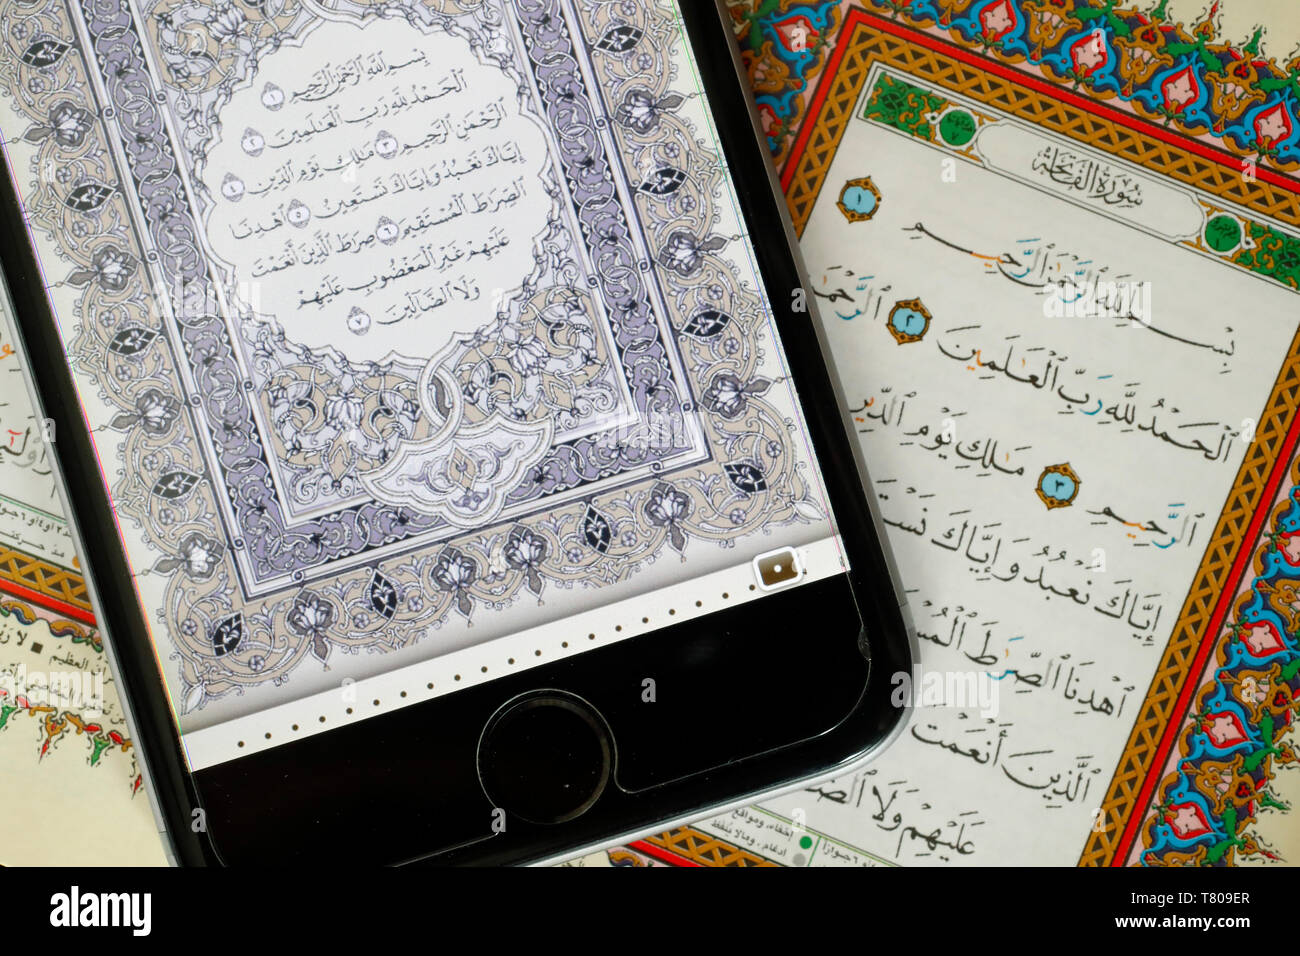 Corano digitale su uno smartphone e il Sacro Corano Il libro, Surat Al-Fatiah, il primo capitolo, Vietnam, Indocina, Asia sud-orientale, Asia Foto Stock